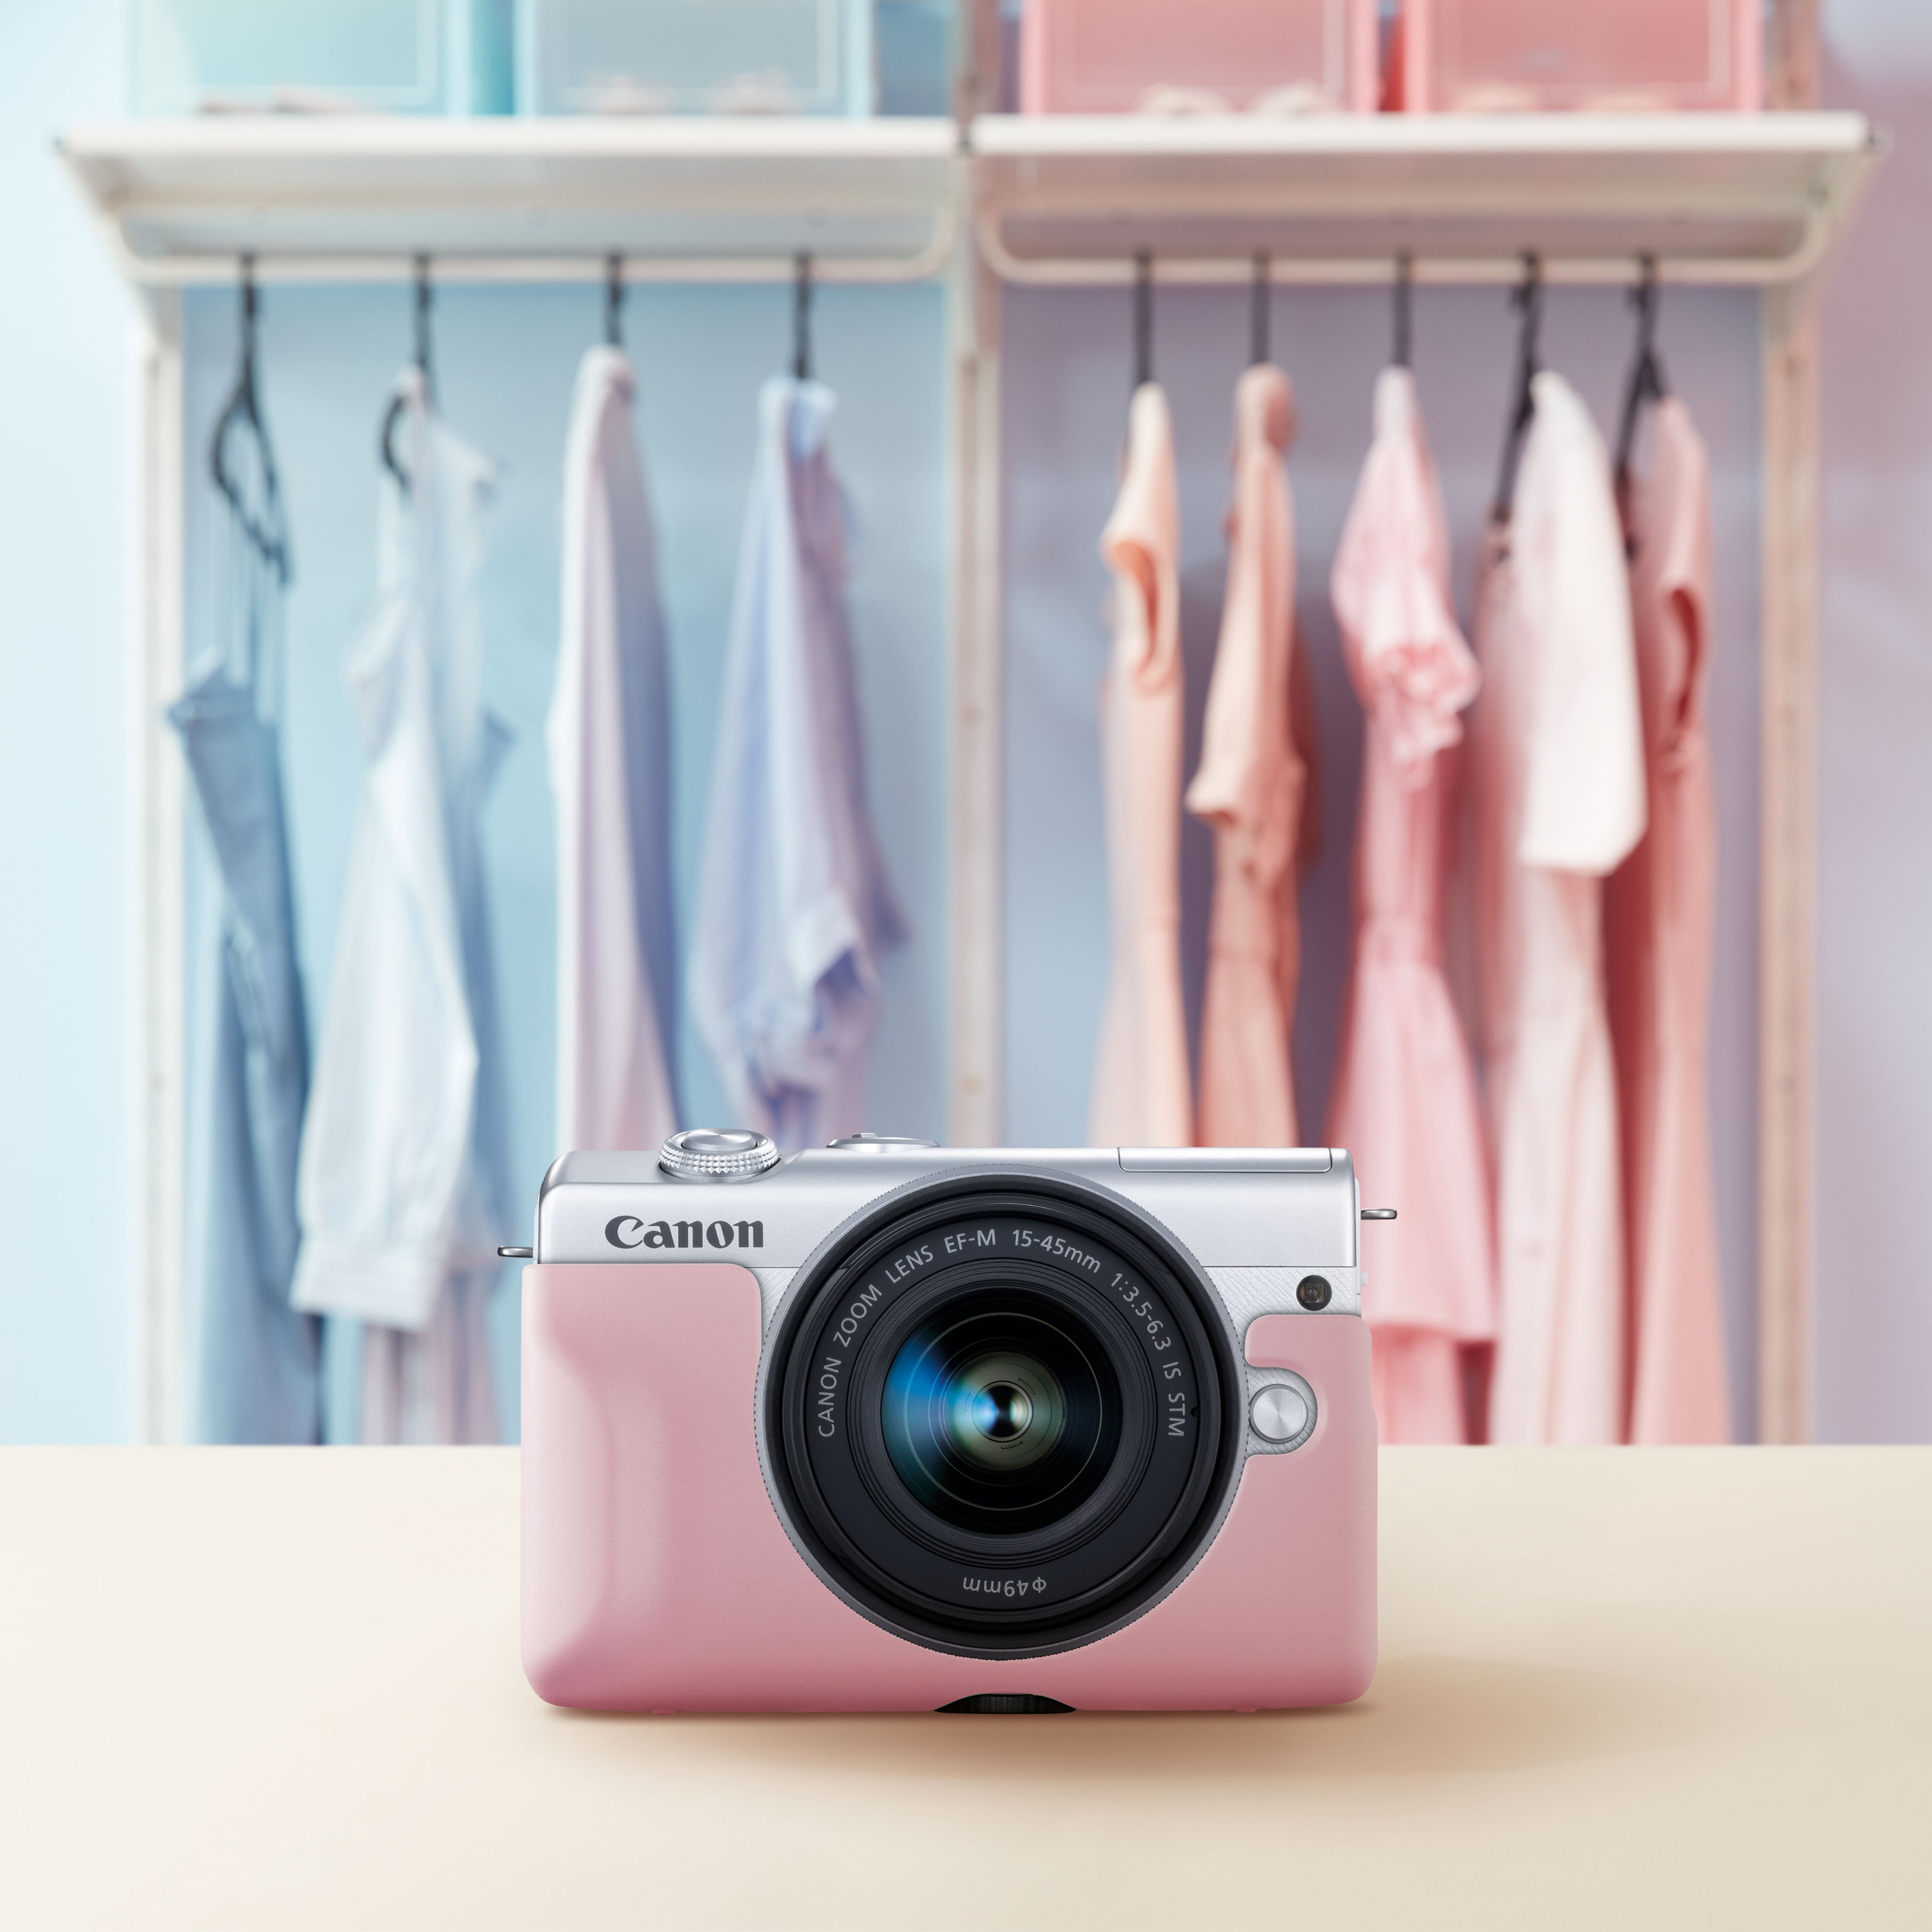 Canon ra mắt máy ảnh EOS M200 giá từ 15,900,000 VND